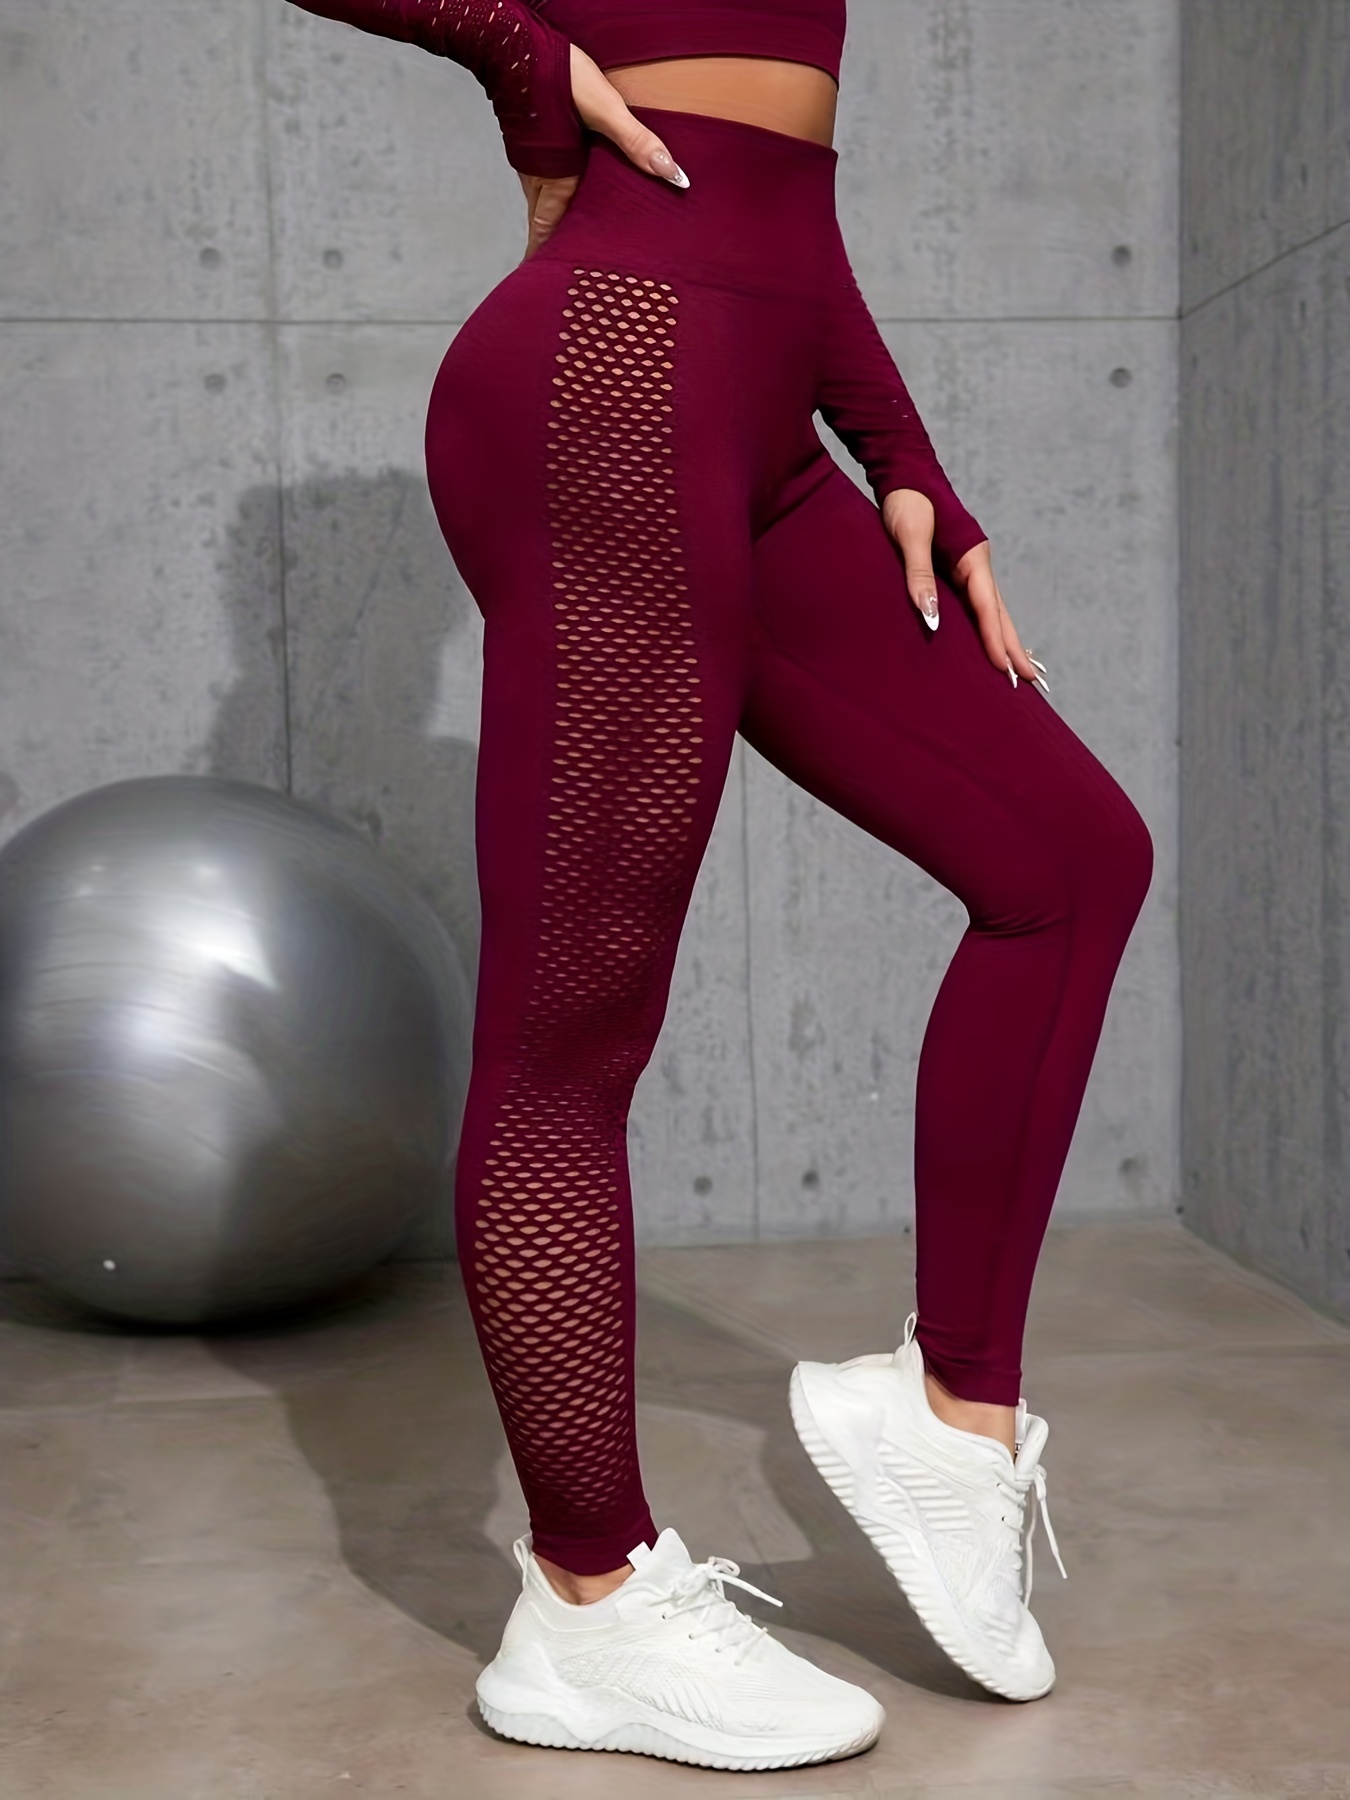 Leggins Deportivos Mujer,High Waisted Leggings -Soft & Slim - pantalones  ajustados para entrenamiento, fitness y correr (rojo purpura, S) :  : Ropa, Zapatos y Accesorios